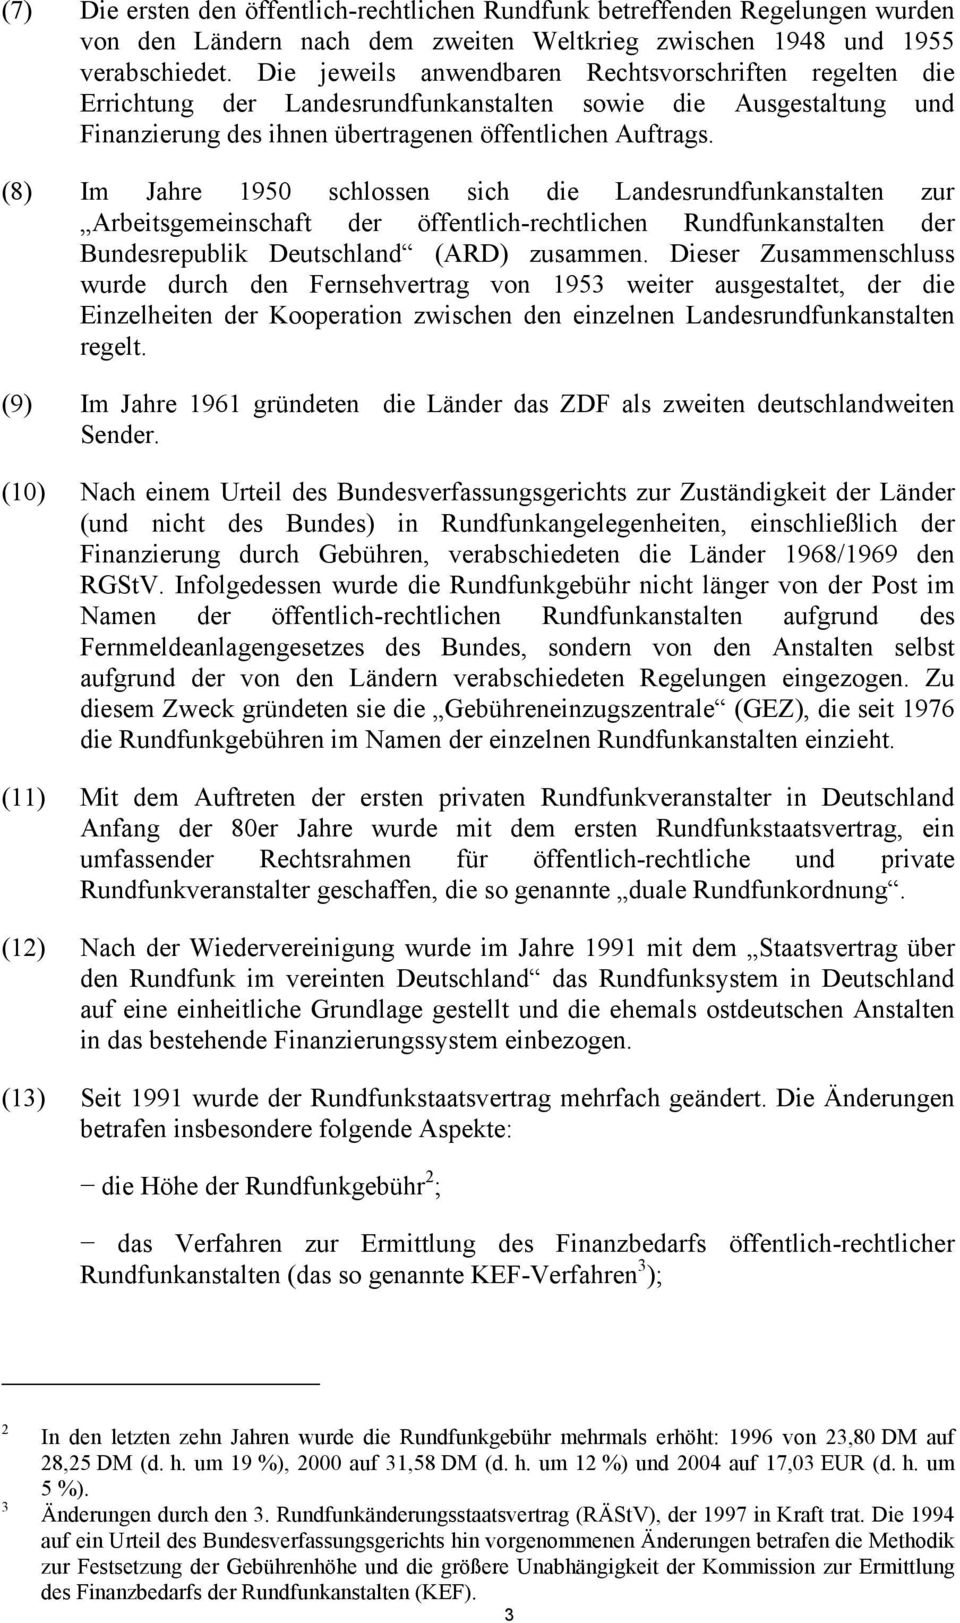 (8) Im Jahre 1950 schlossen sich die Landesrundfunkanstalten zur Arbeitsgemeinschaft der öffentlich-rechtlichen Rundfunkanstalten der Bundesrepublik Deutschland (ARD) zusammen.